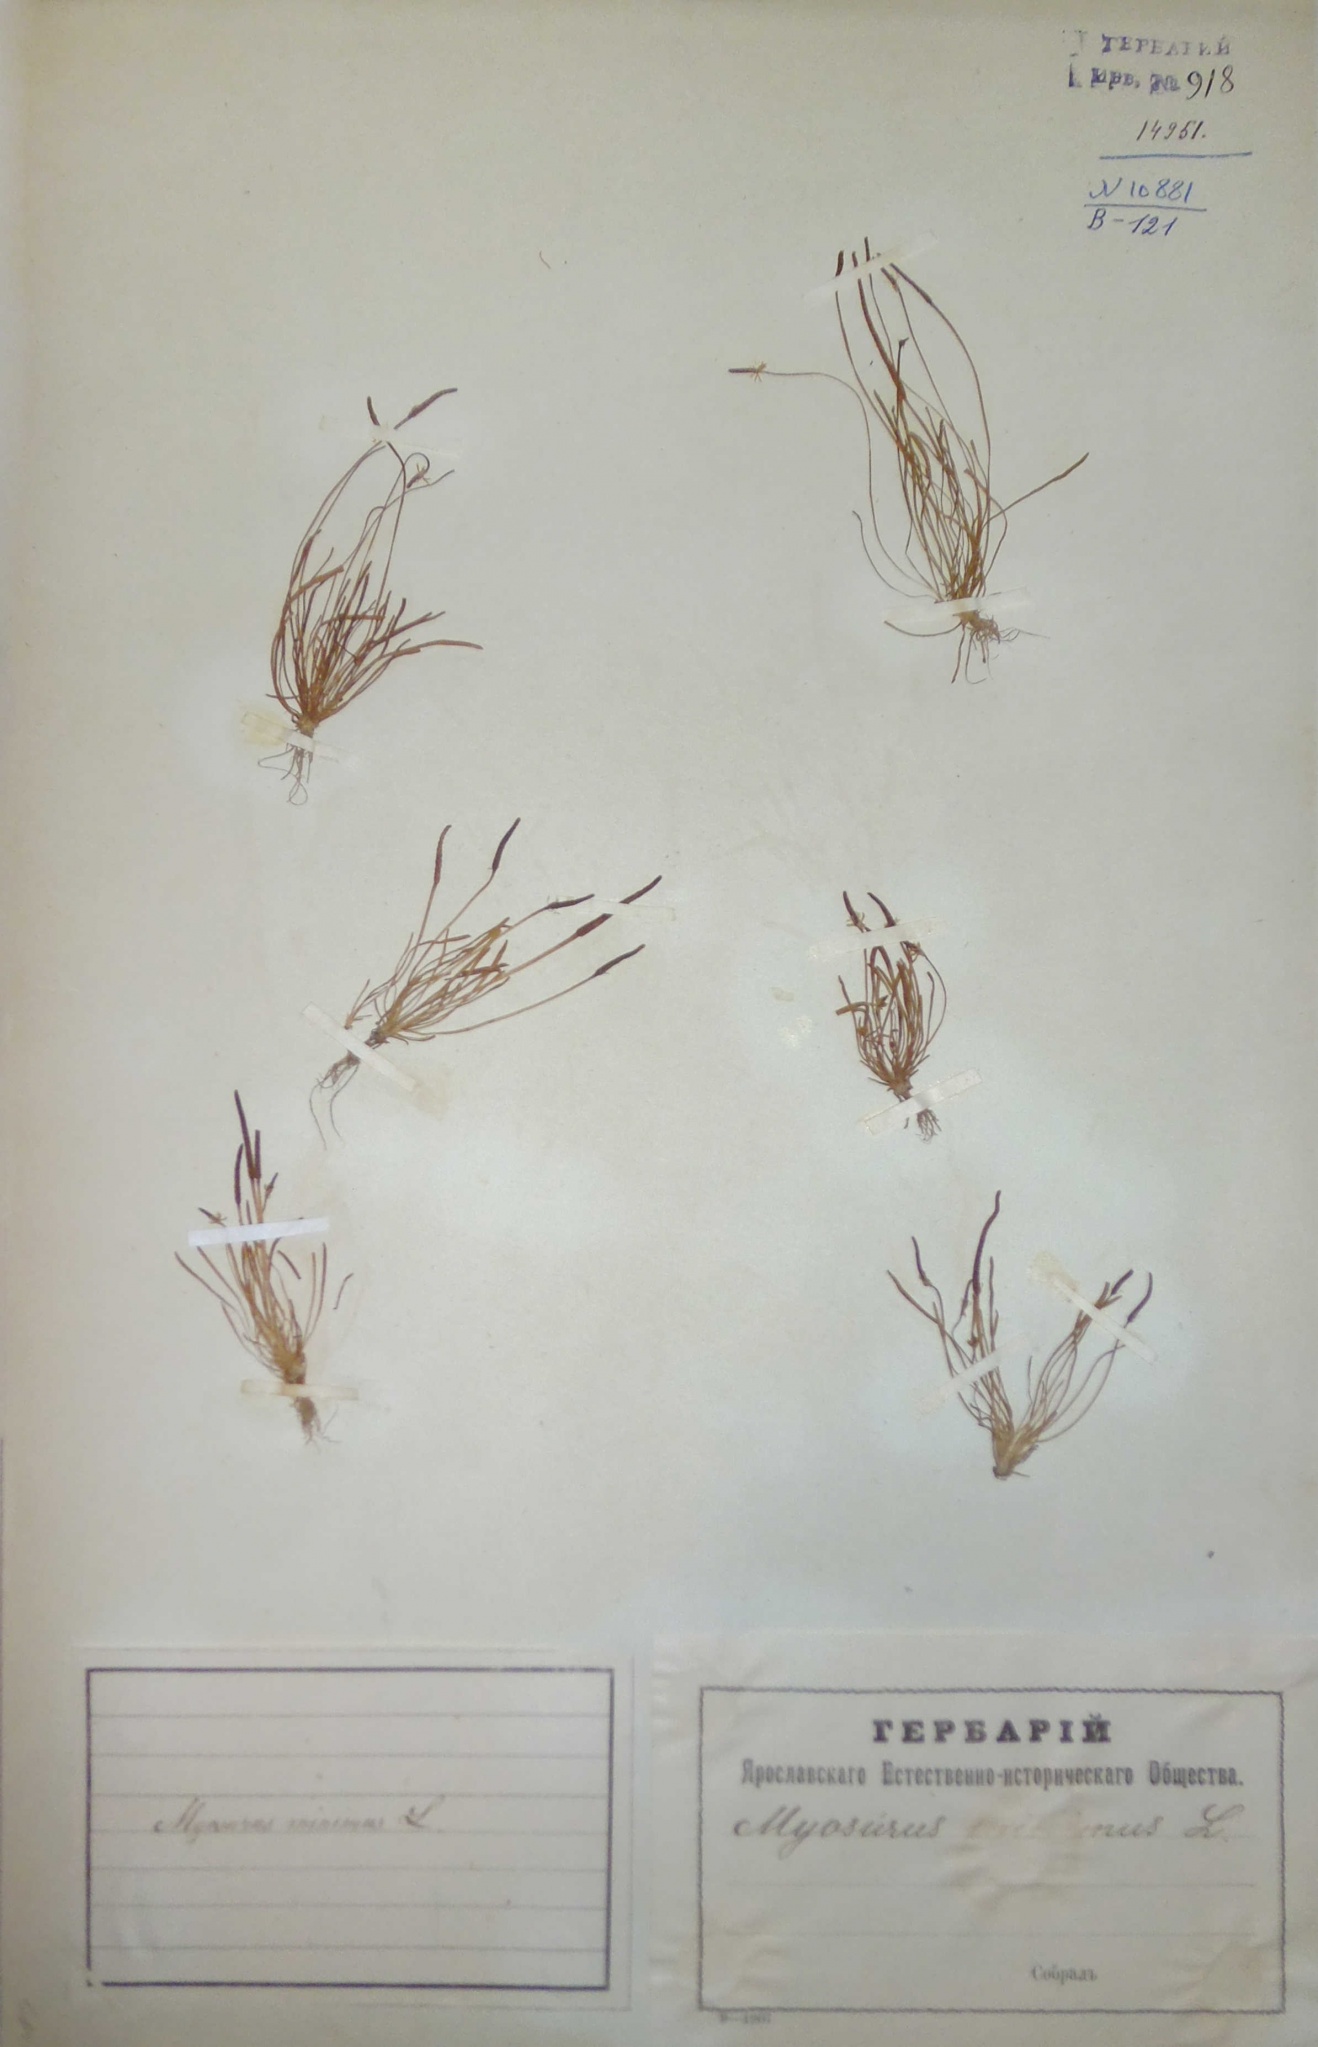 Мышехвостник маленький (Myosurus minimus) — сорное широко распространенное растение.